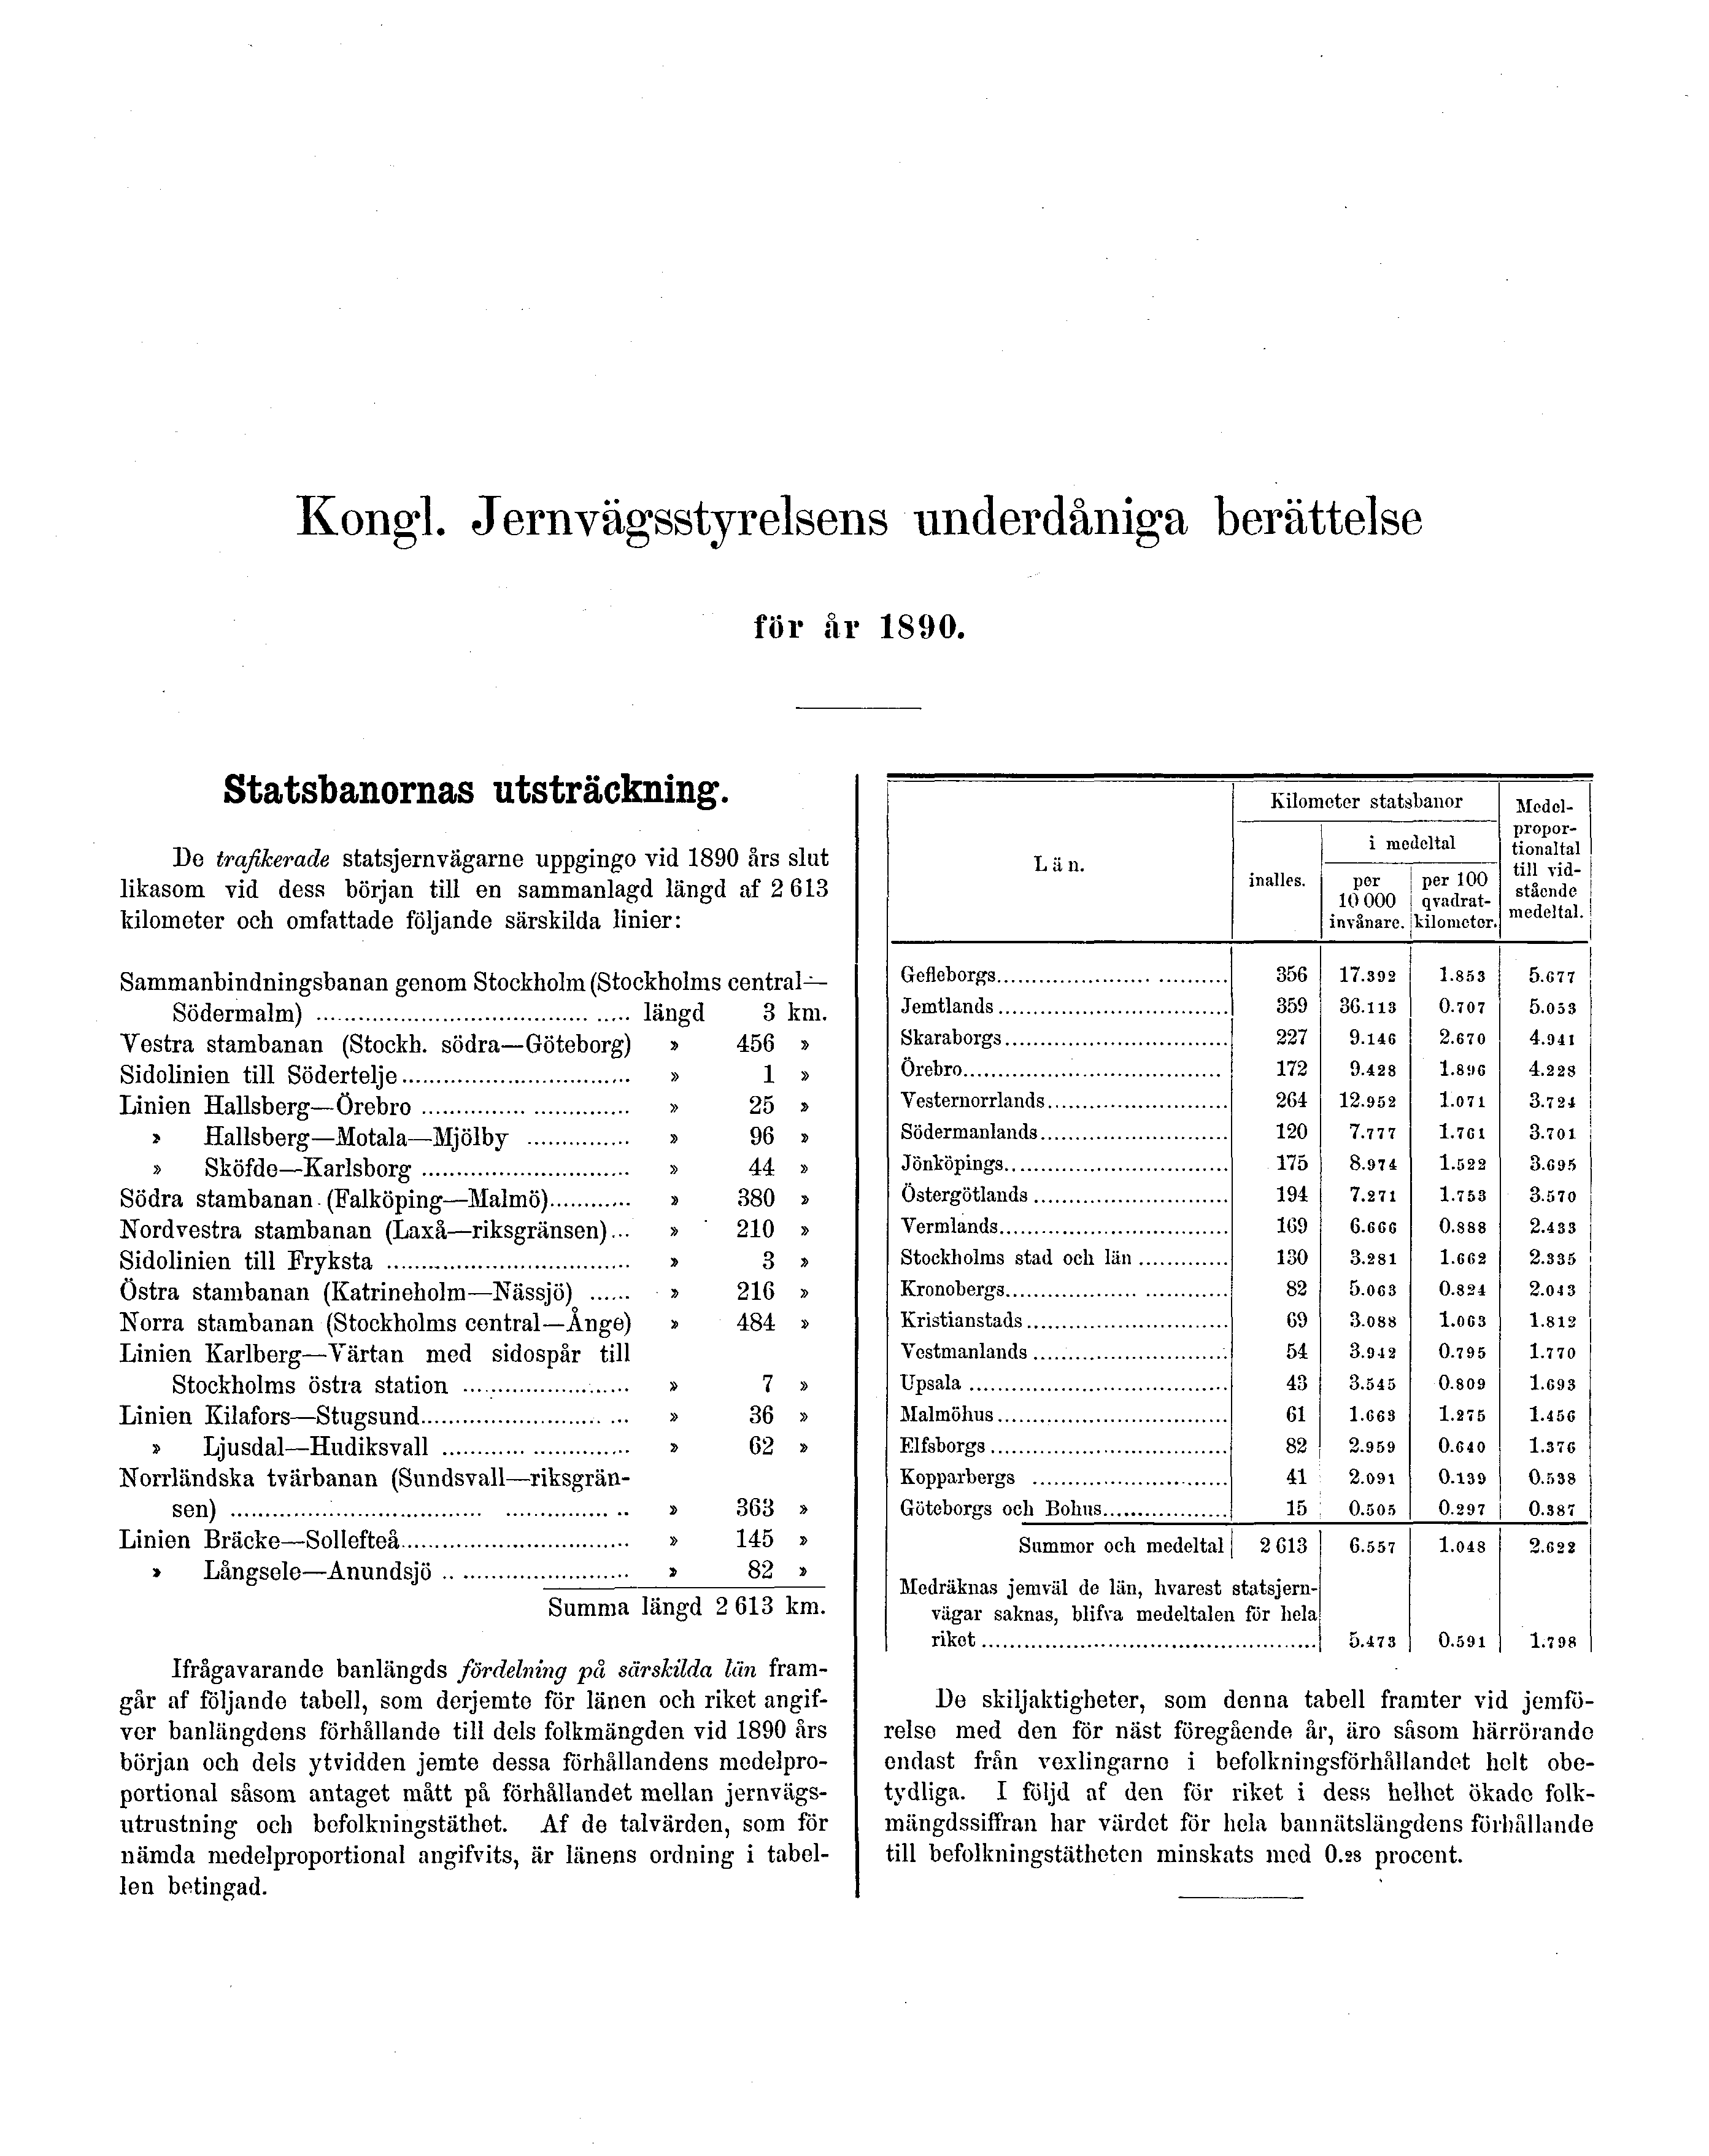 Kongl. Jernvägsstyrelsens underdåniga berättelse för år 1890. Statsbanornas utsträckning.